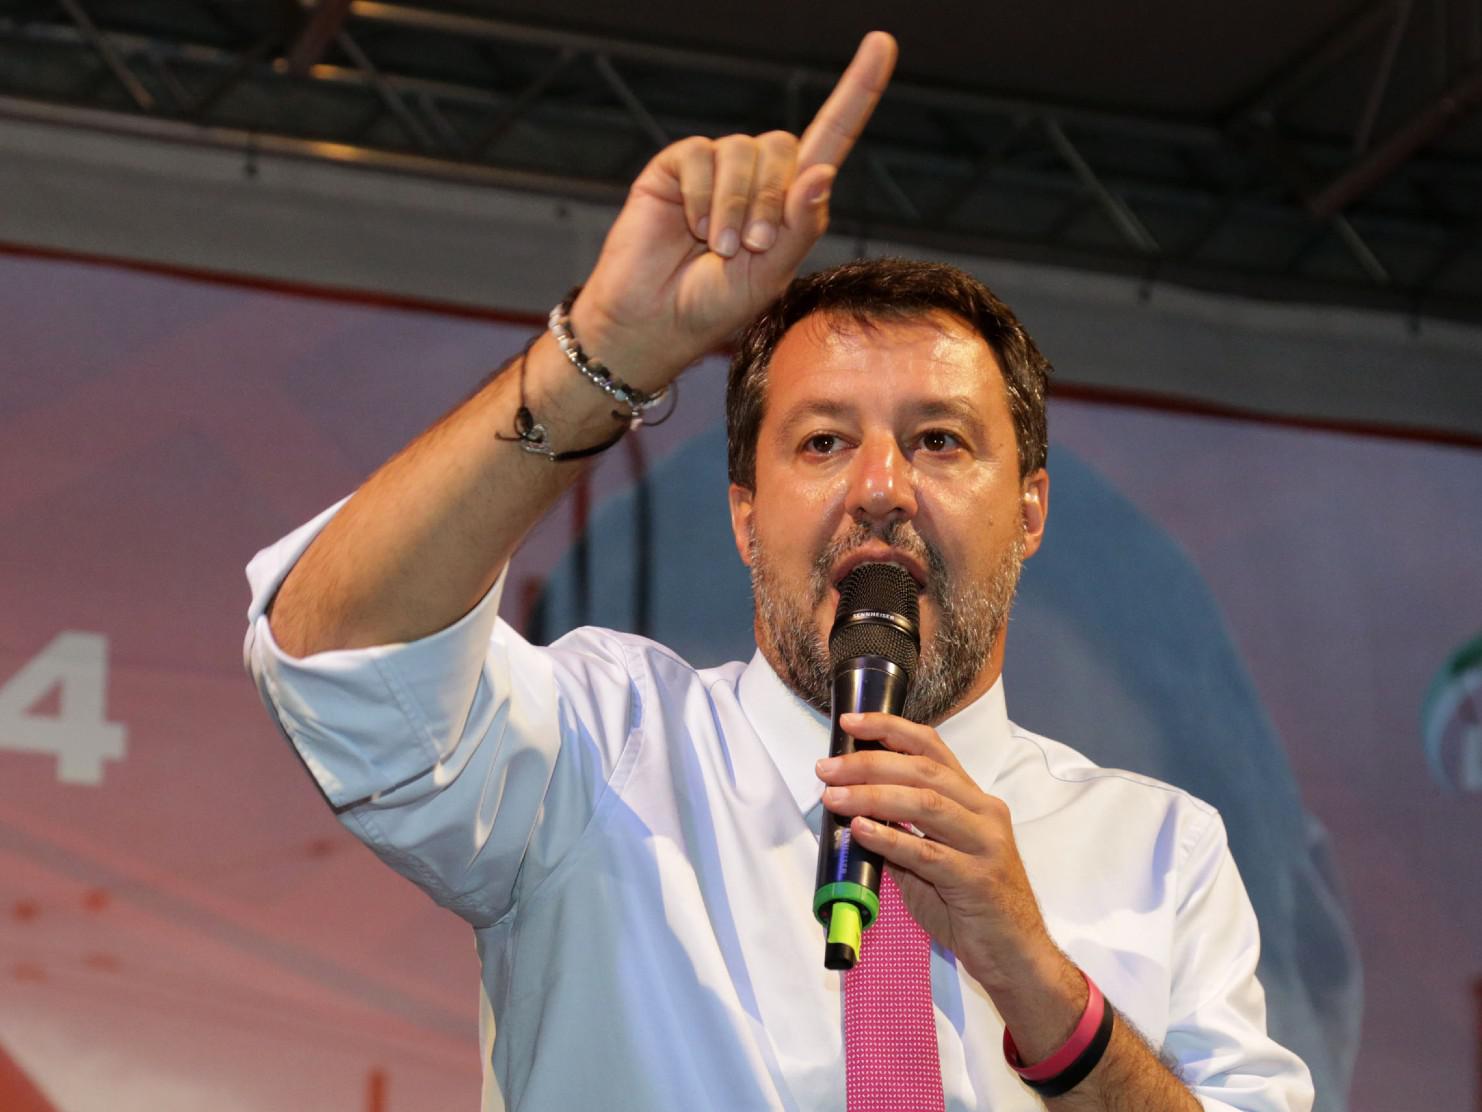 Crisi governo, Salvini: "Impossibile governare con Pd, pensa a droga e immigrati"